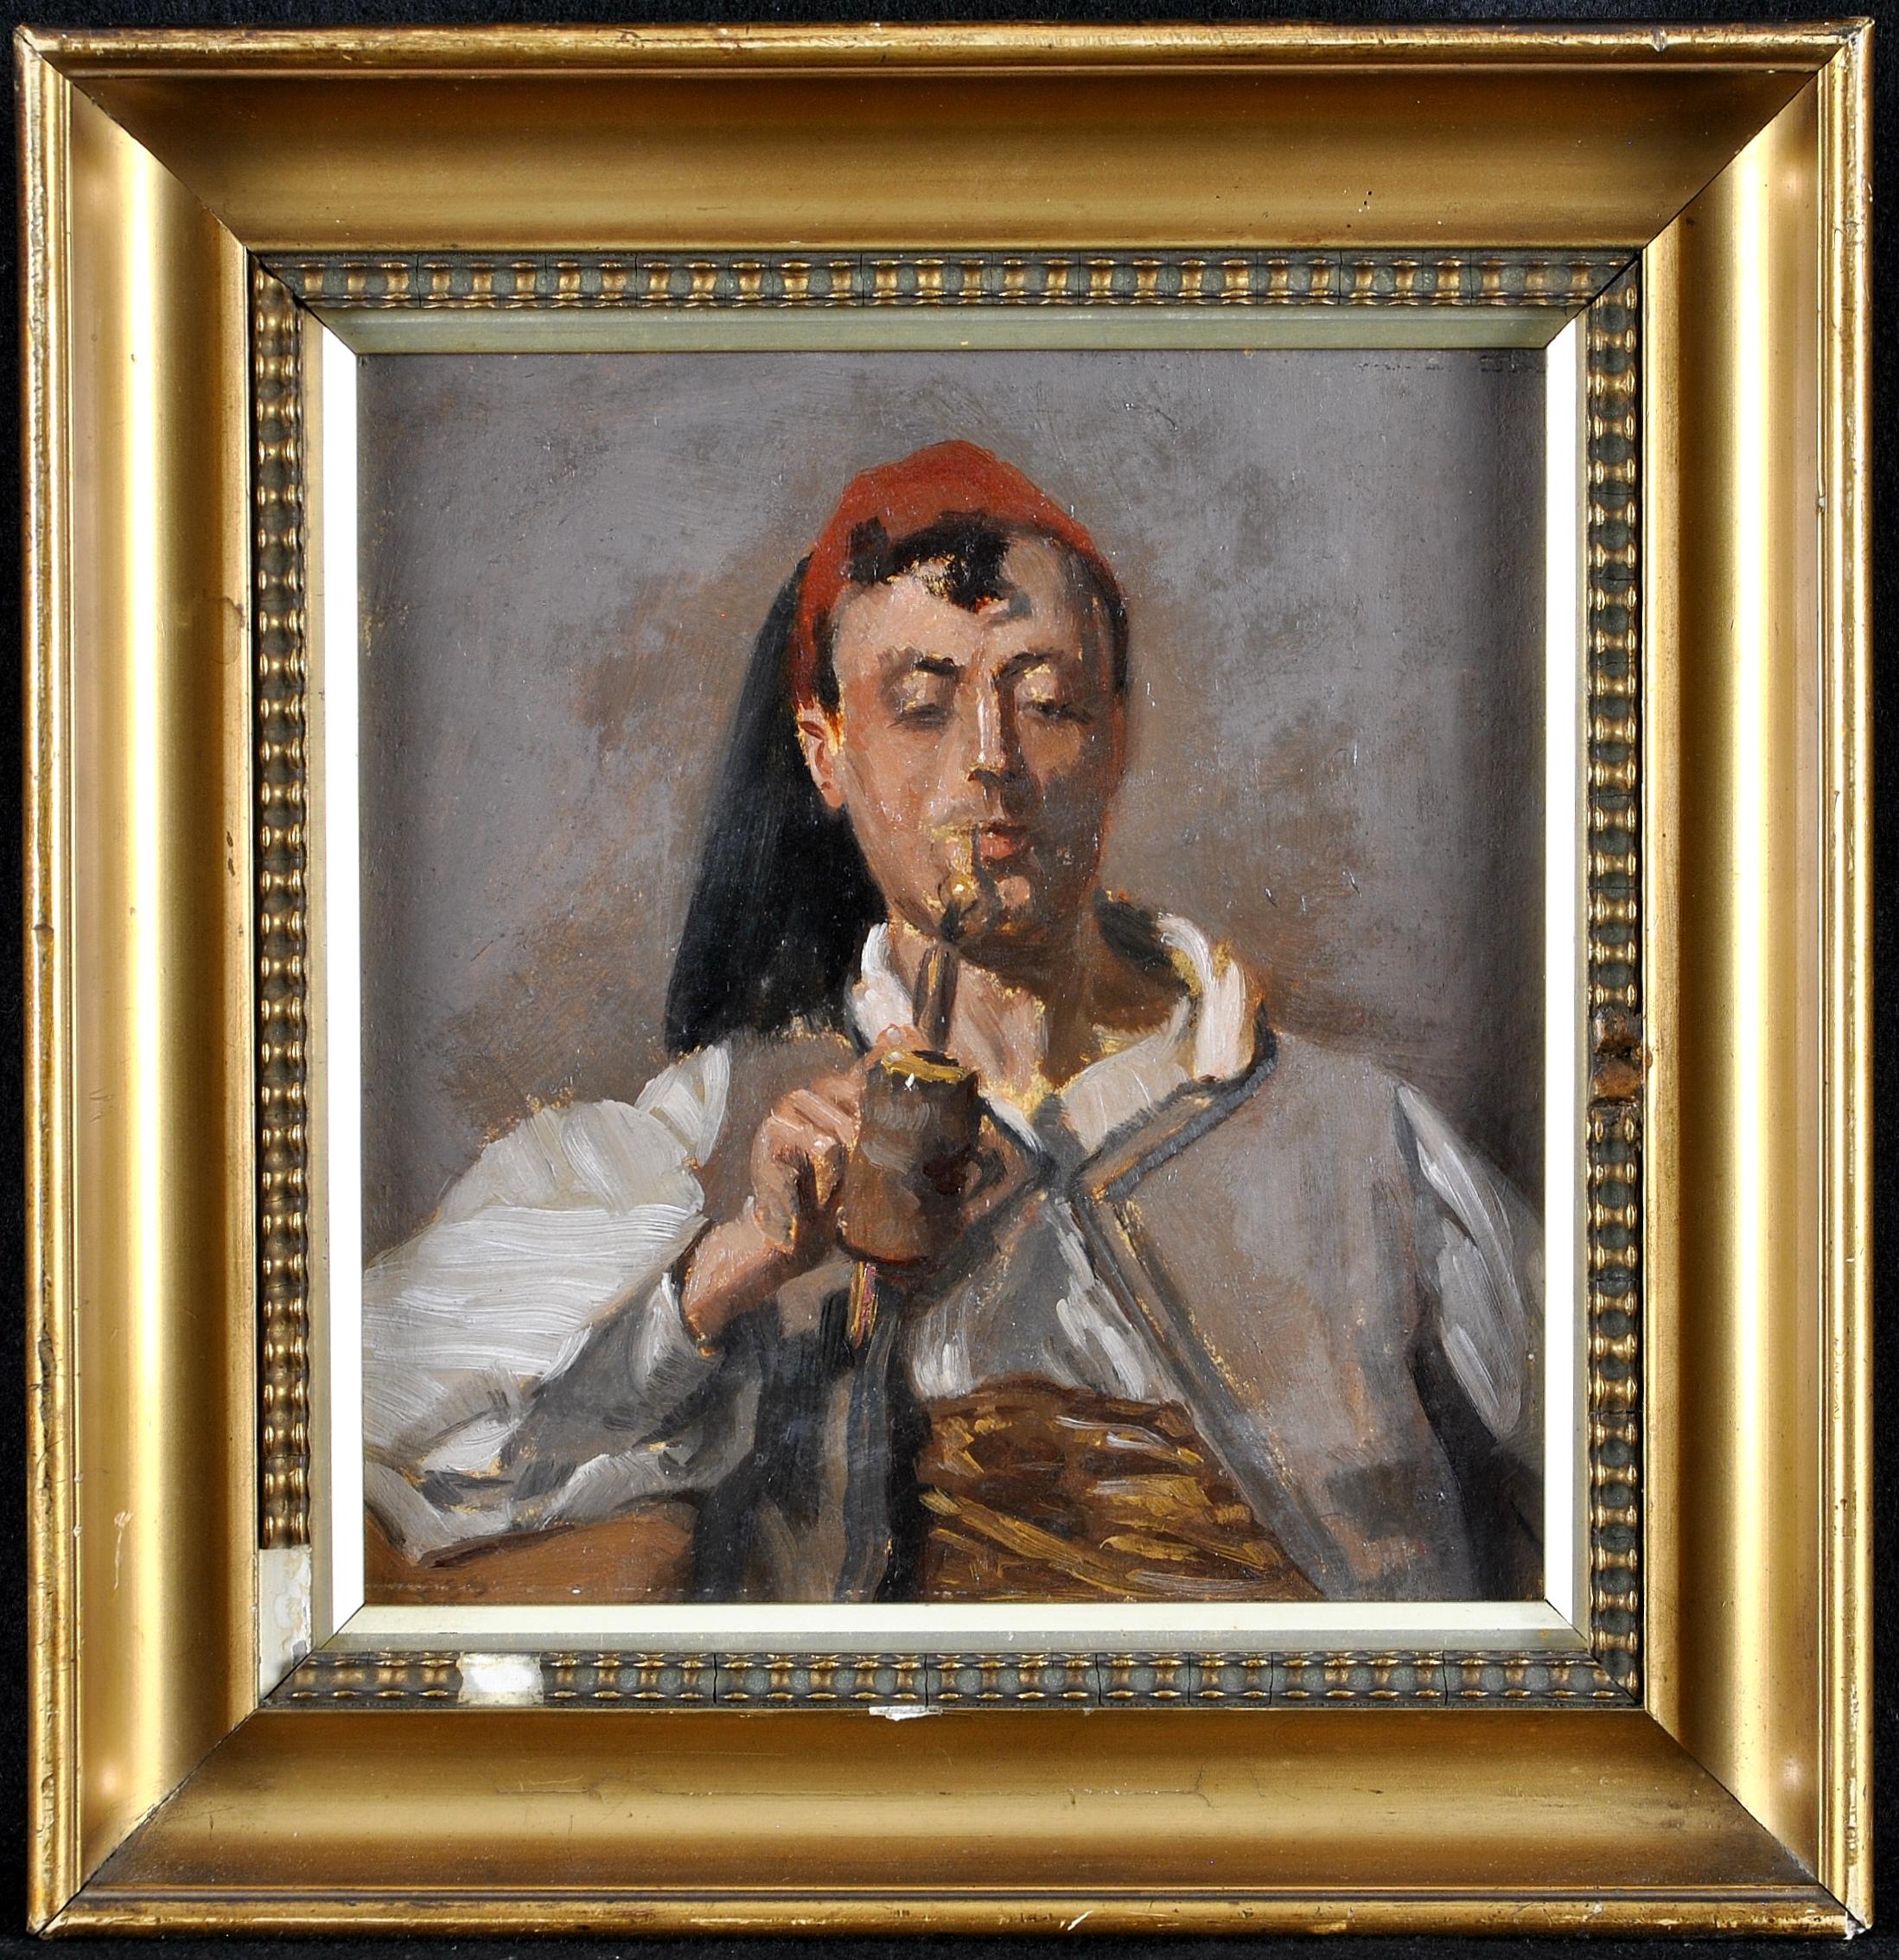 Unknown Portrait Painting – Nordafrikanischer Mann beim Rauchen einer Pfeife - Antikes britisches orientalistisches Porträtgemälde